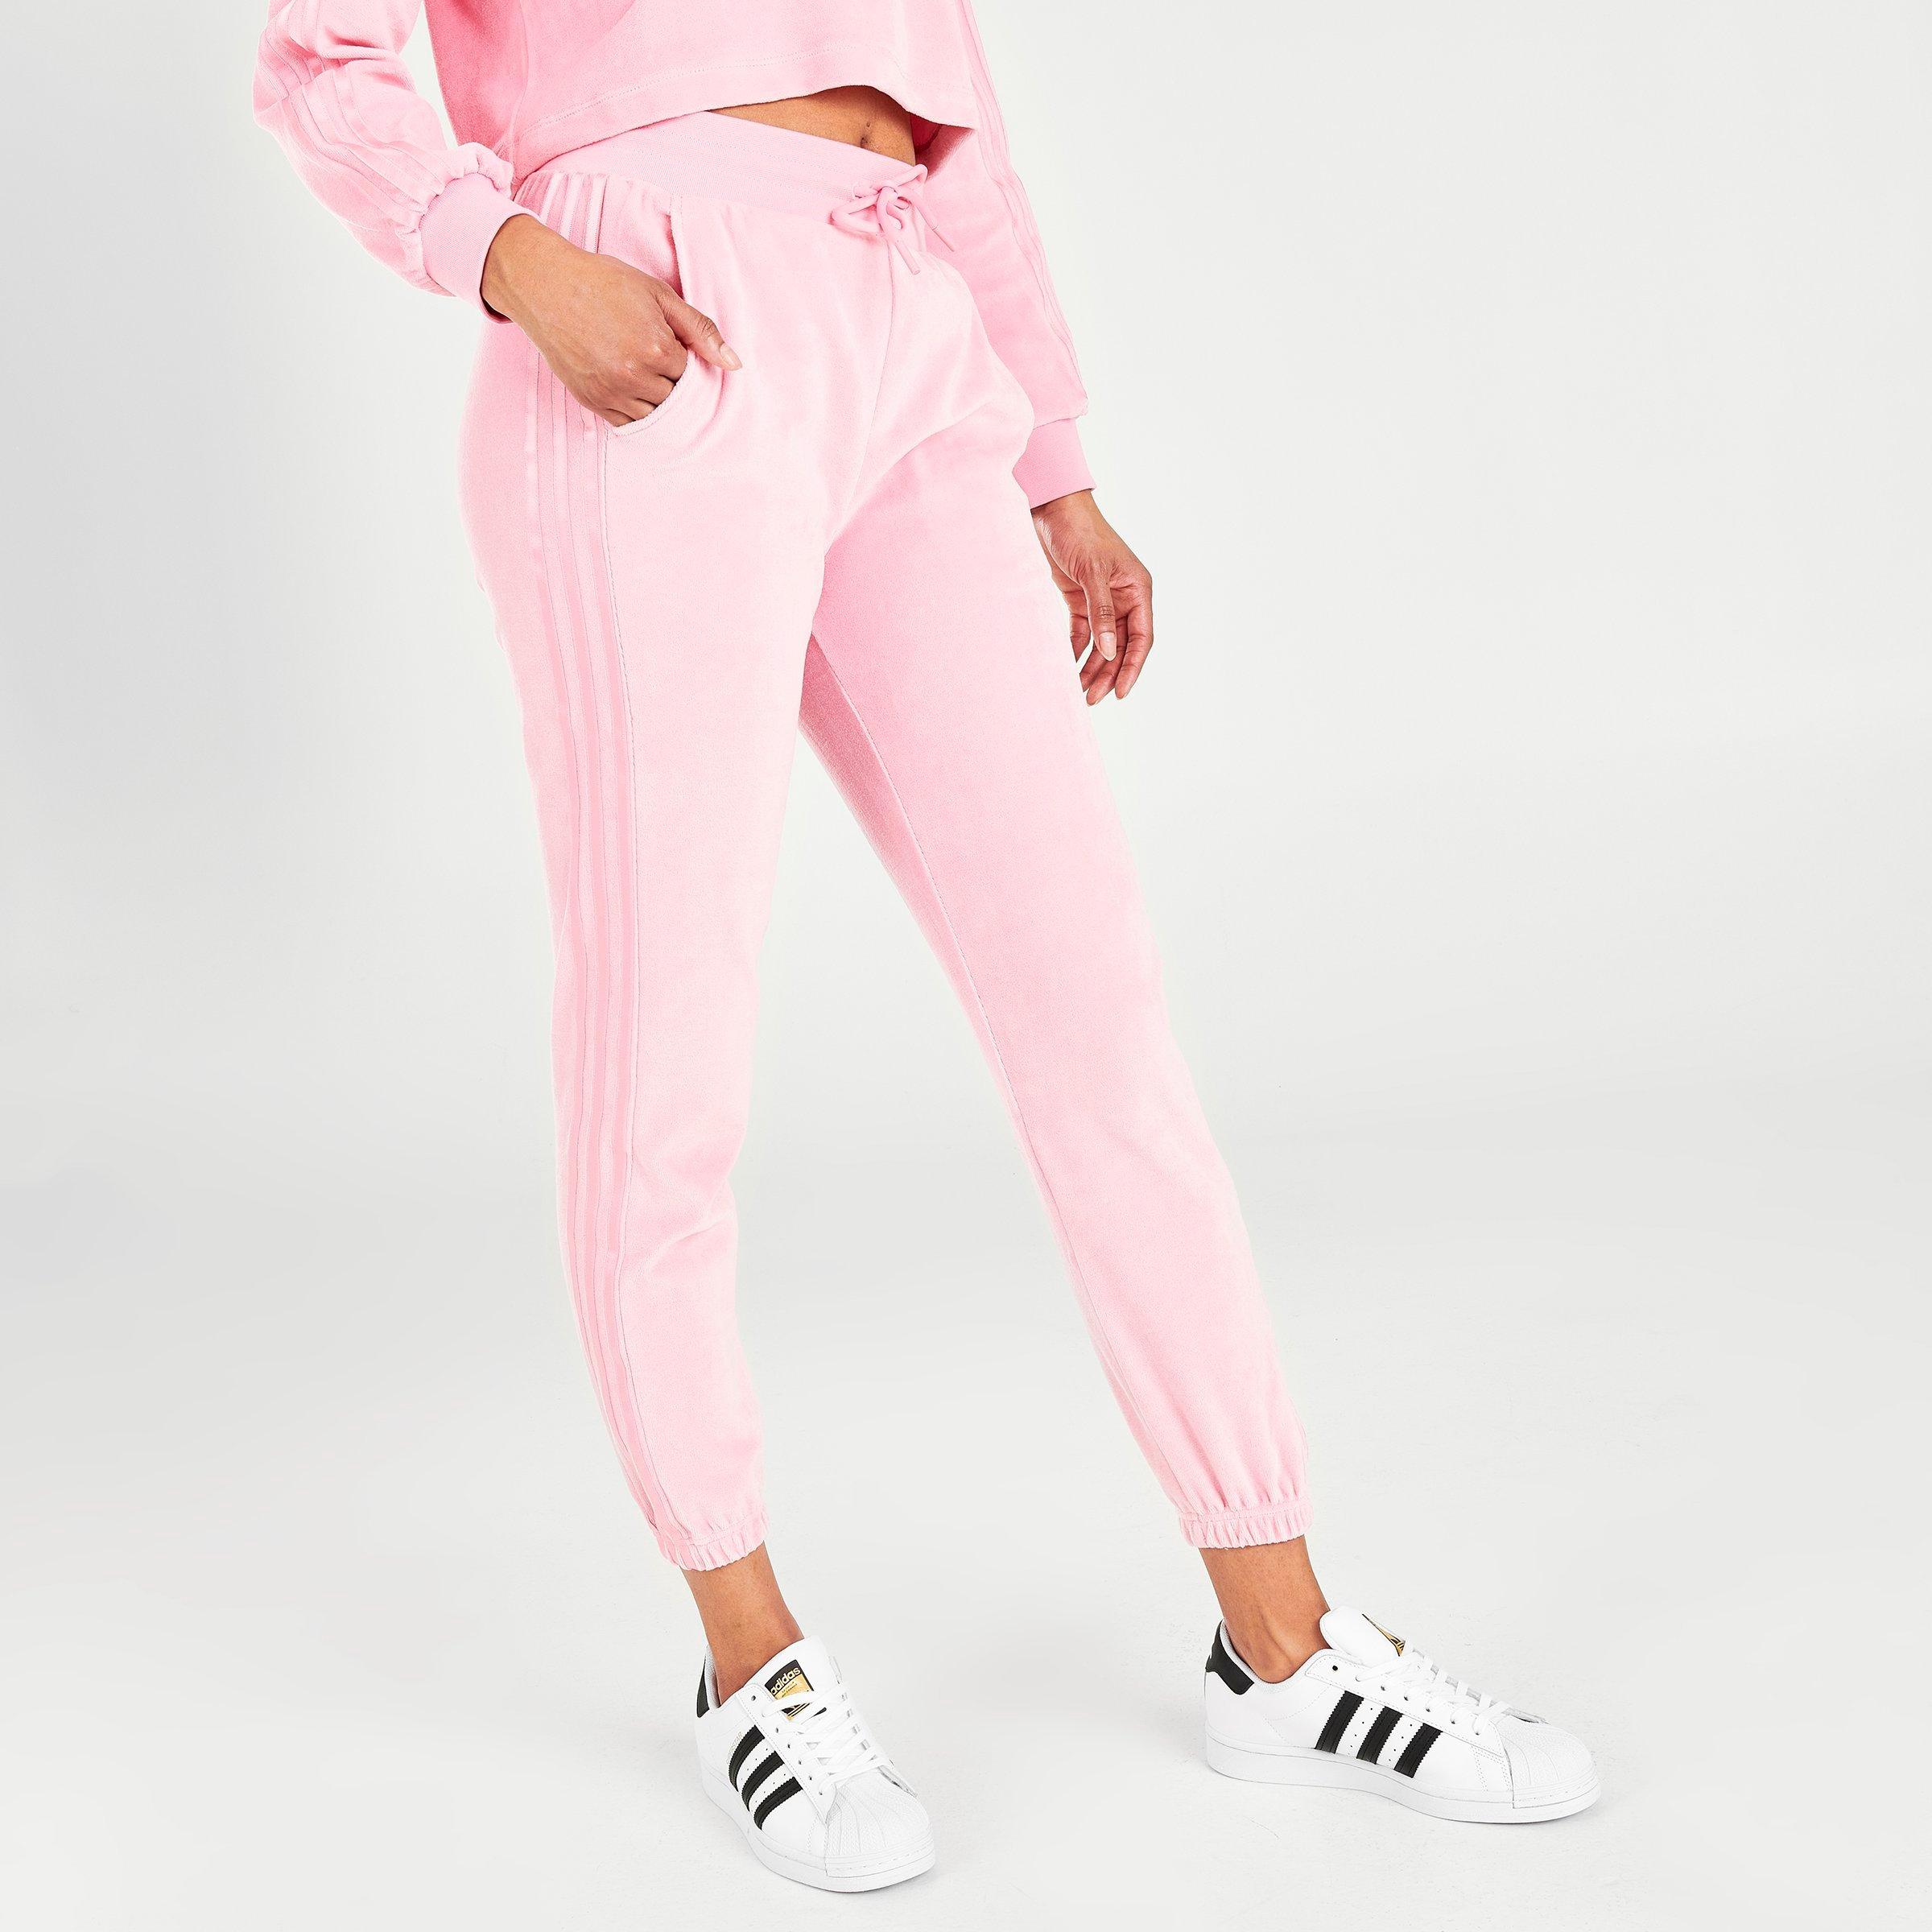 light pink adidas pants